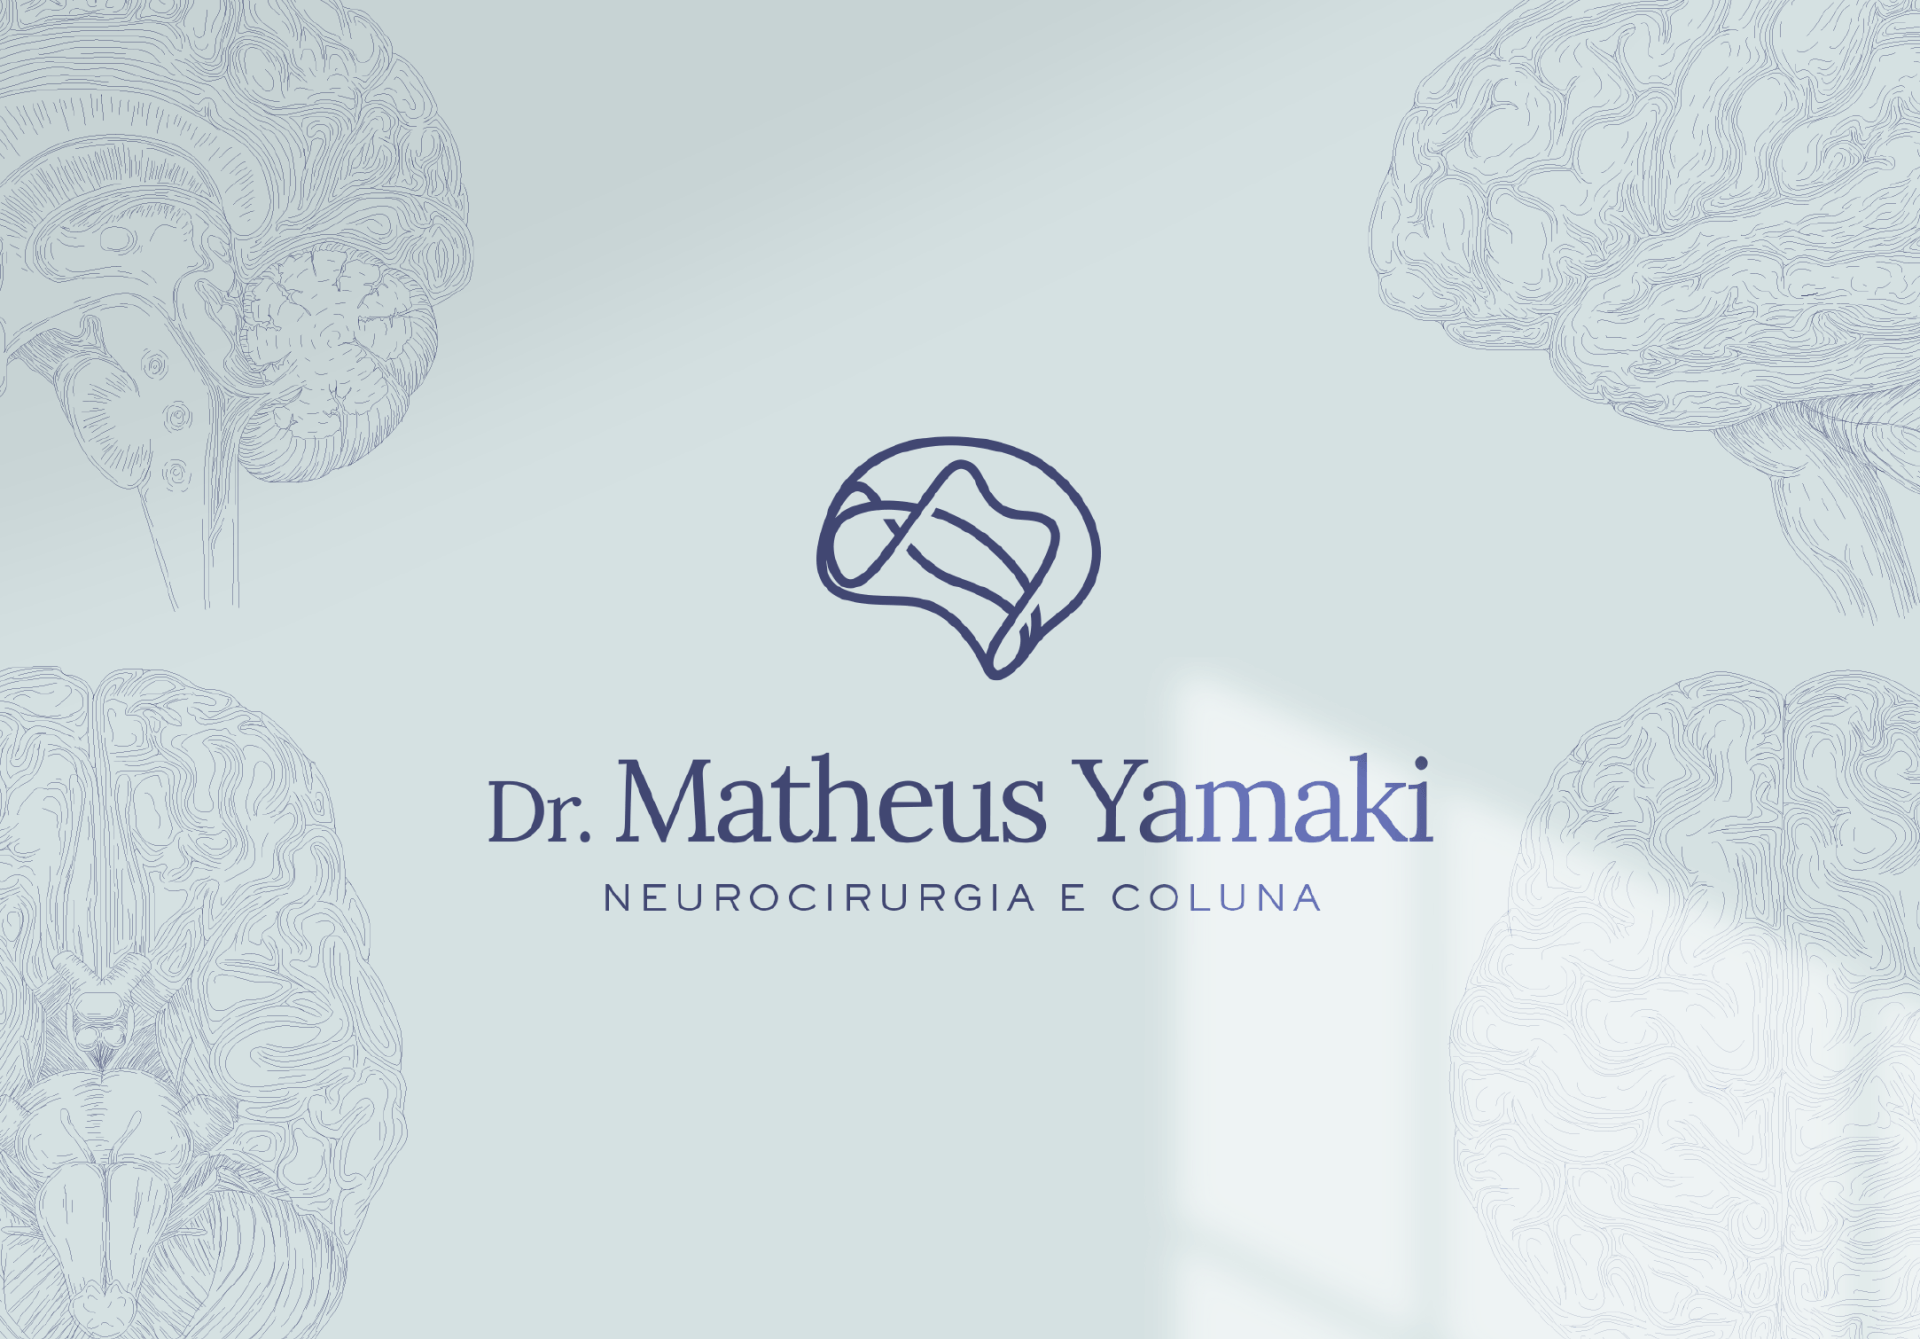 Logotipo do Dr. Matheus Yamaki aplicado em fundo com ilustrações de cérebro e iluminação de janela.